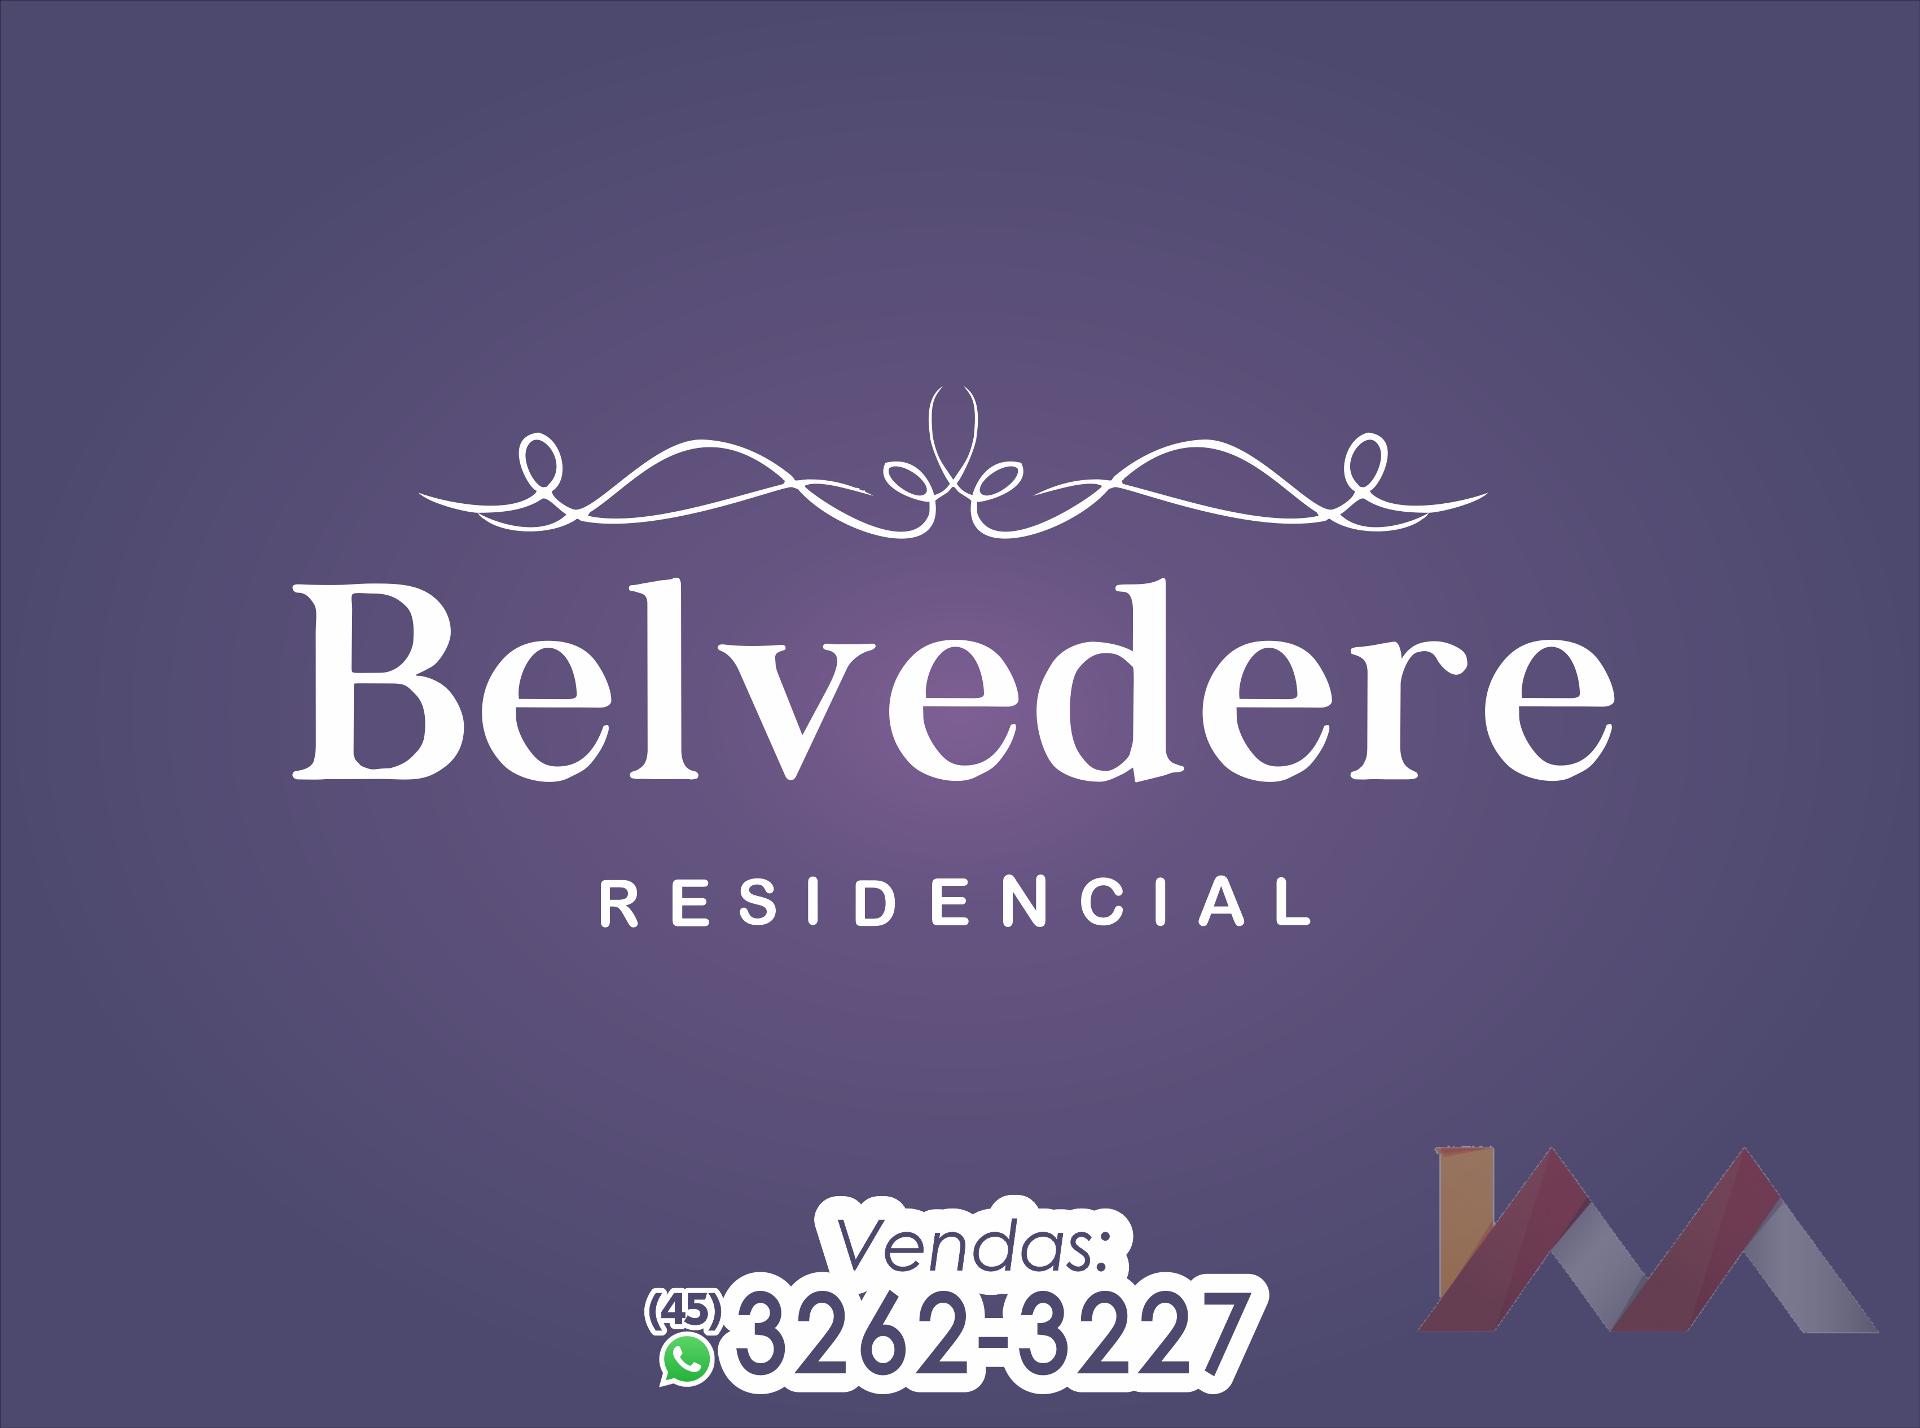 Apartamento 306 do Residencial Belvedere